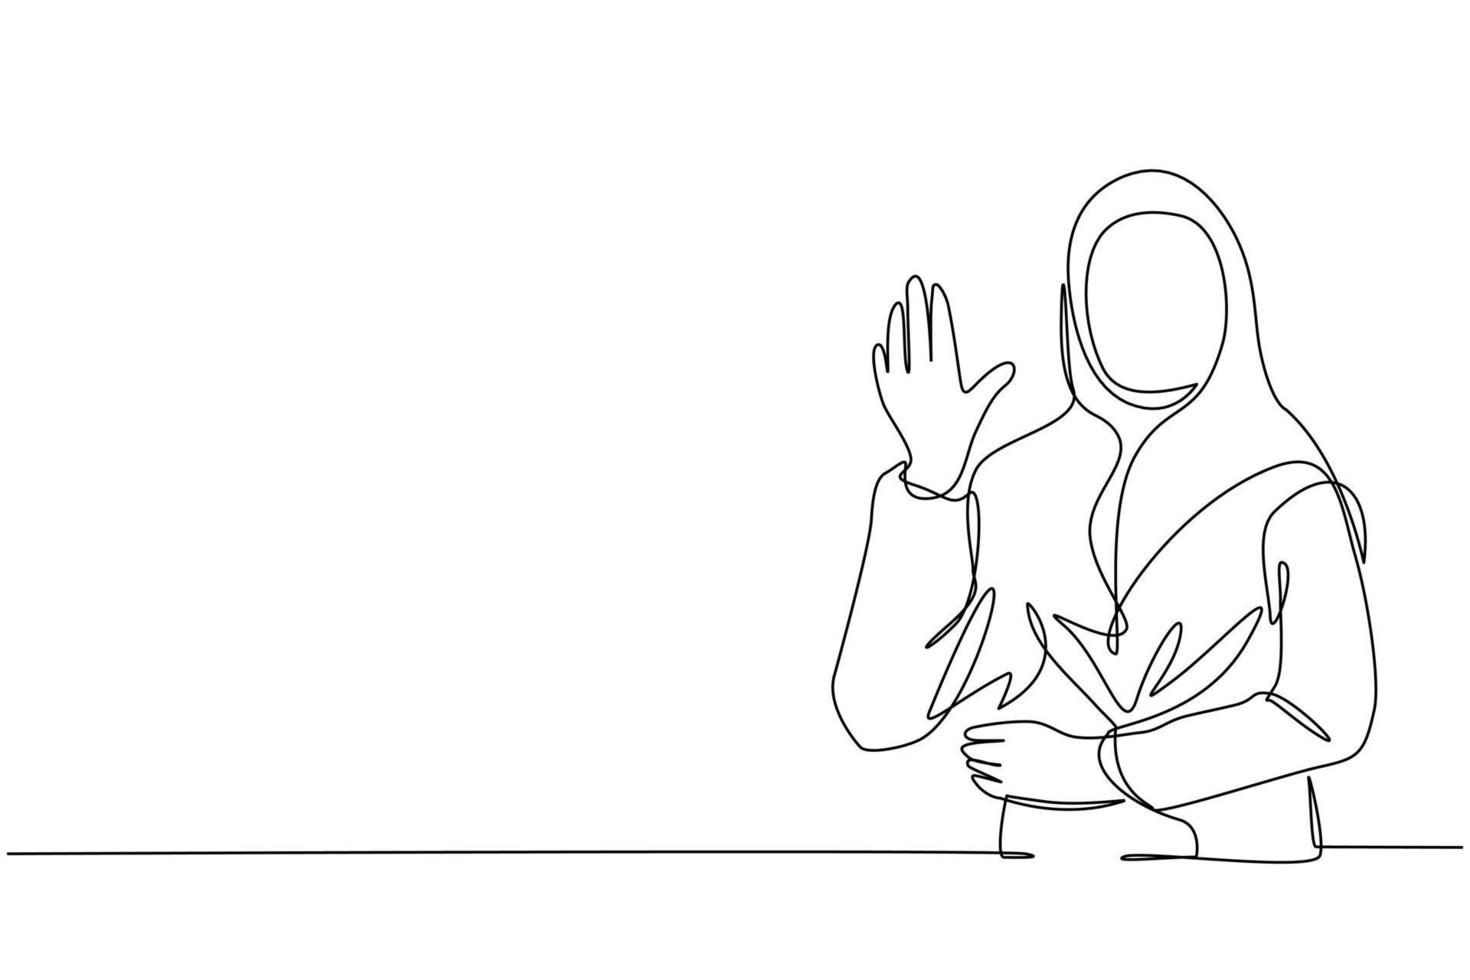 singola linea di disegno giovane donna d'affari araba che mostra il palmo come segno di stop, soggiorno, attesa o gesto di rifiuto. emozione, concetto di linguaggio del corpo. illustrazione vettoriale grafica di disegno a linea continua